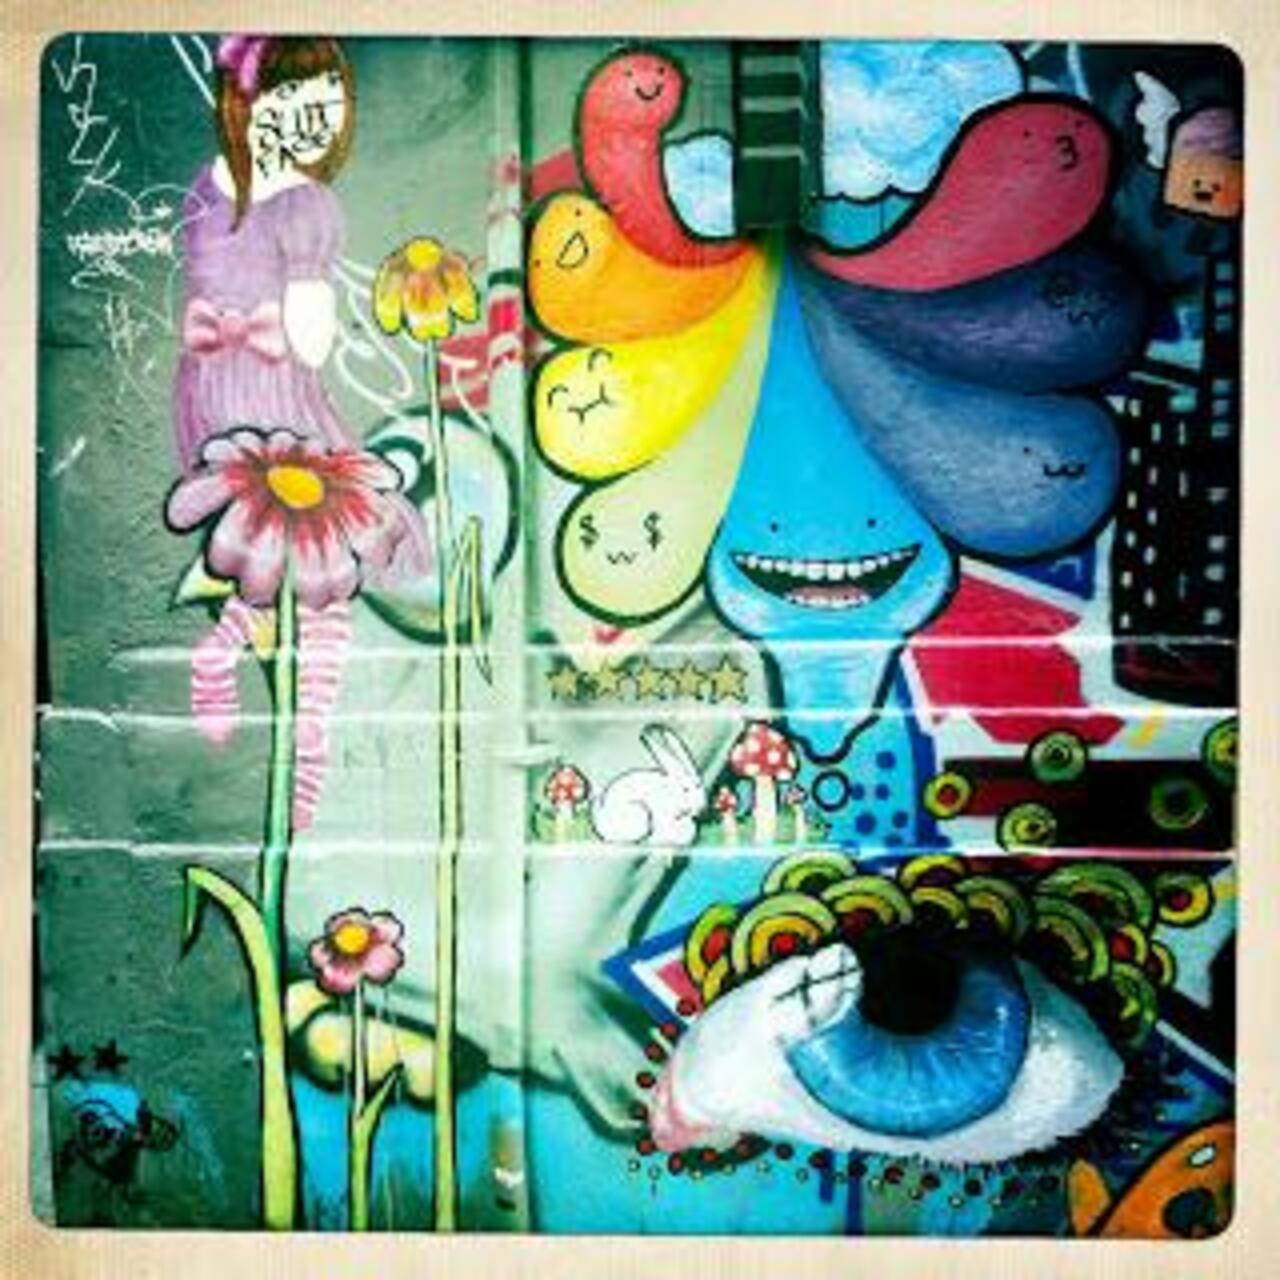 “@5putnik1: Wall Vision #streetart #graffiti #art #funky #dope . : http://t.co/GpiJzMf3x6